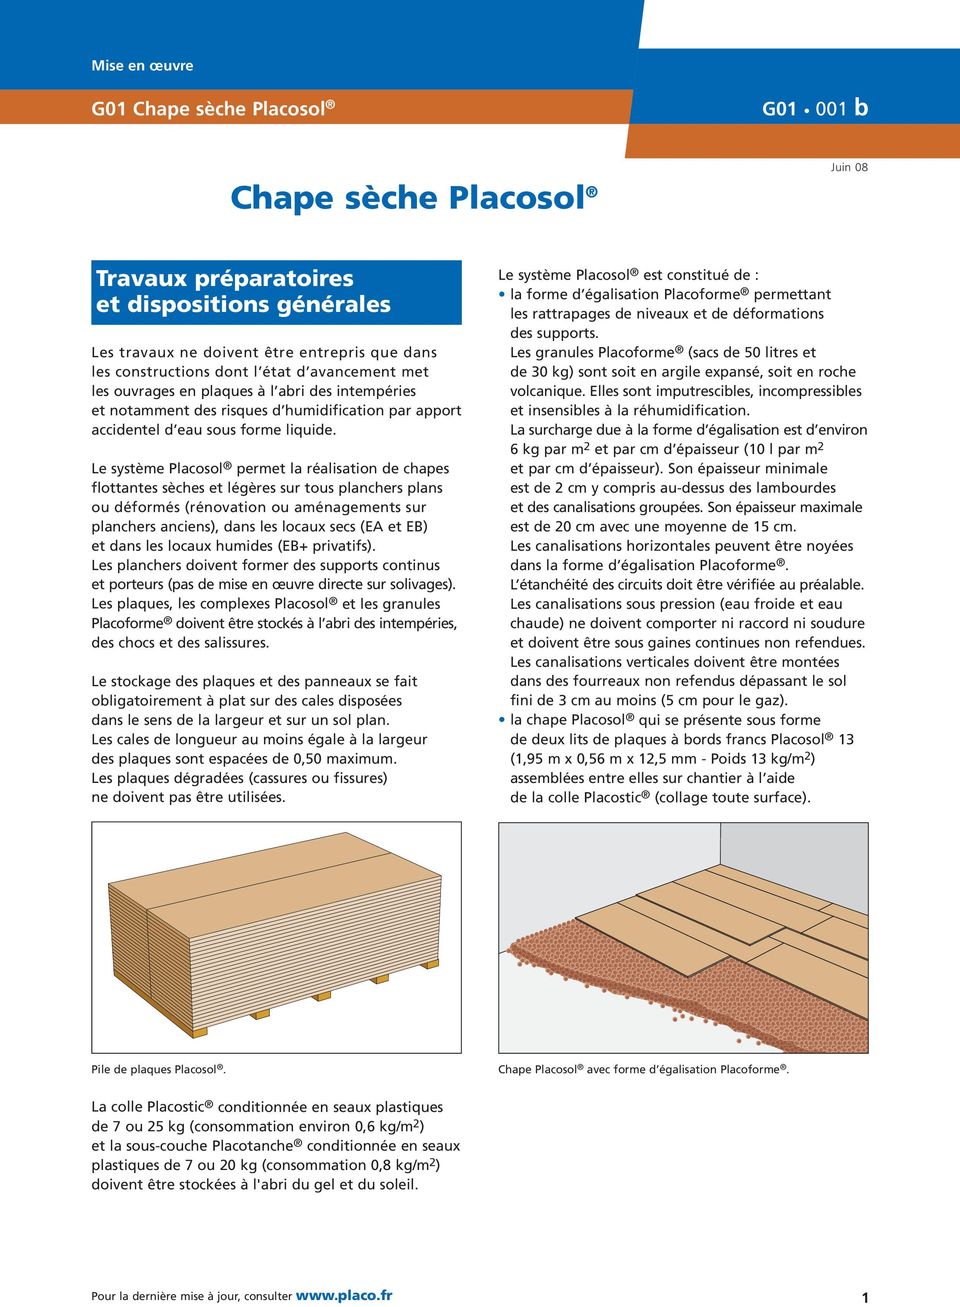 Le système Placosol permet la réalisation de chapes flottantes sèches et légères sur tous planchers plans ou déformés (rénovation ou aménagemts sur planchers ancis), dans les locaux secs (EA et EB)